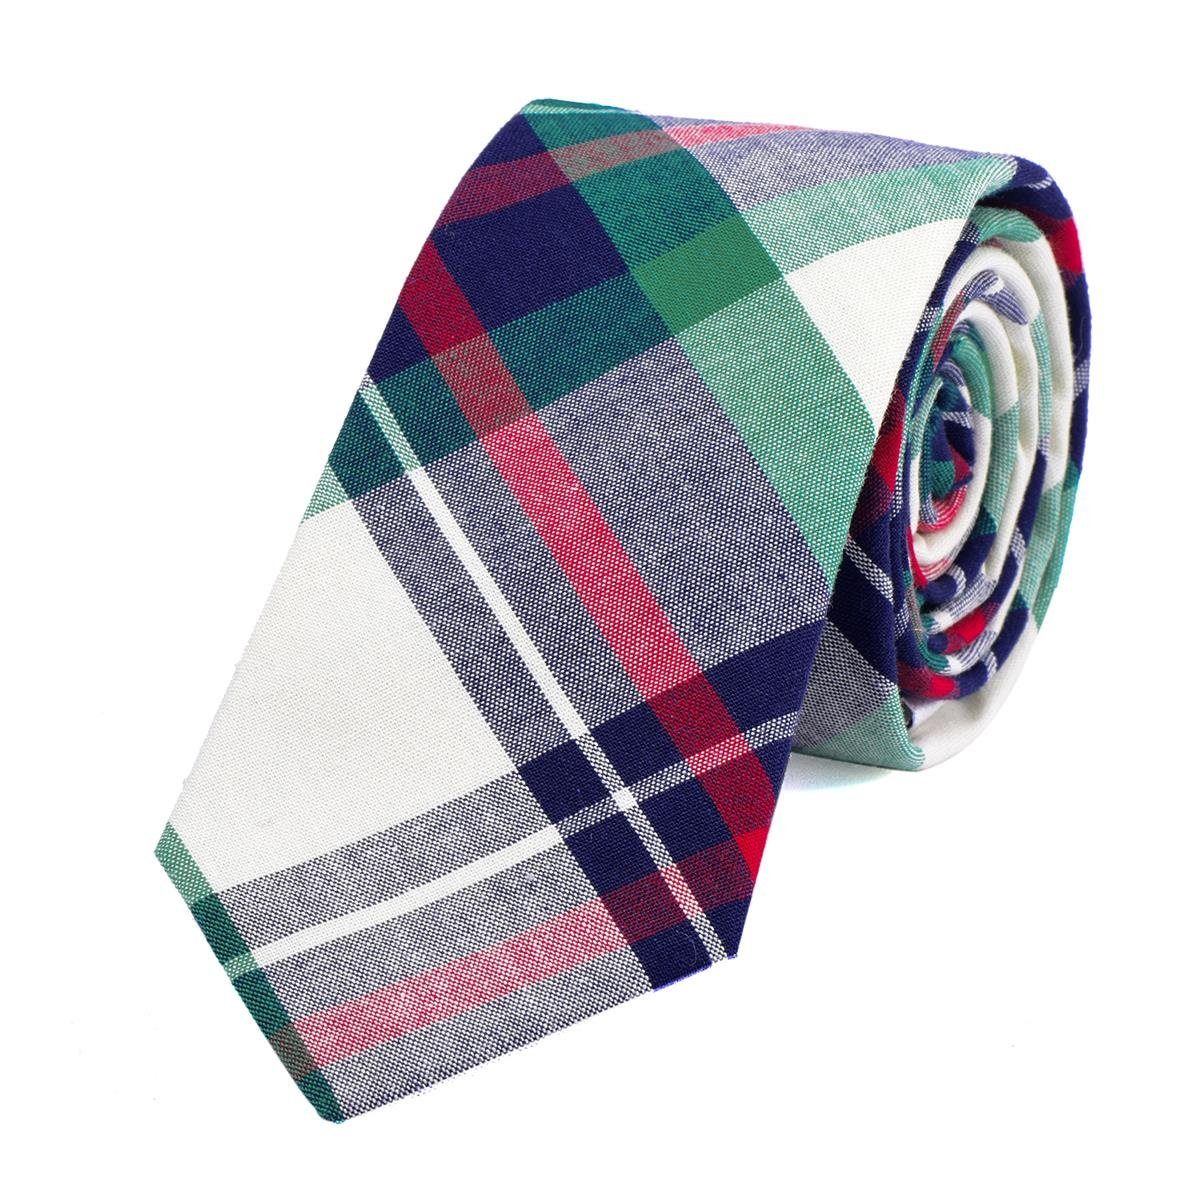 DonDon Krawatte Herren Krawatte 6 cm mit Karos oder Streifen (Packung, 1-St., 1x Krawatte) Baumwolle, kariert oder gestreift, für Büro oder festliche Veranstaltungen elfenbein-blau kariert